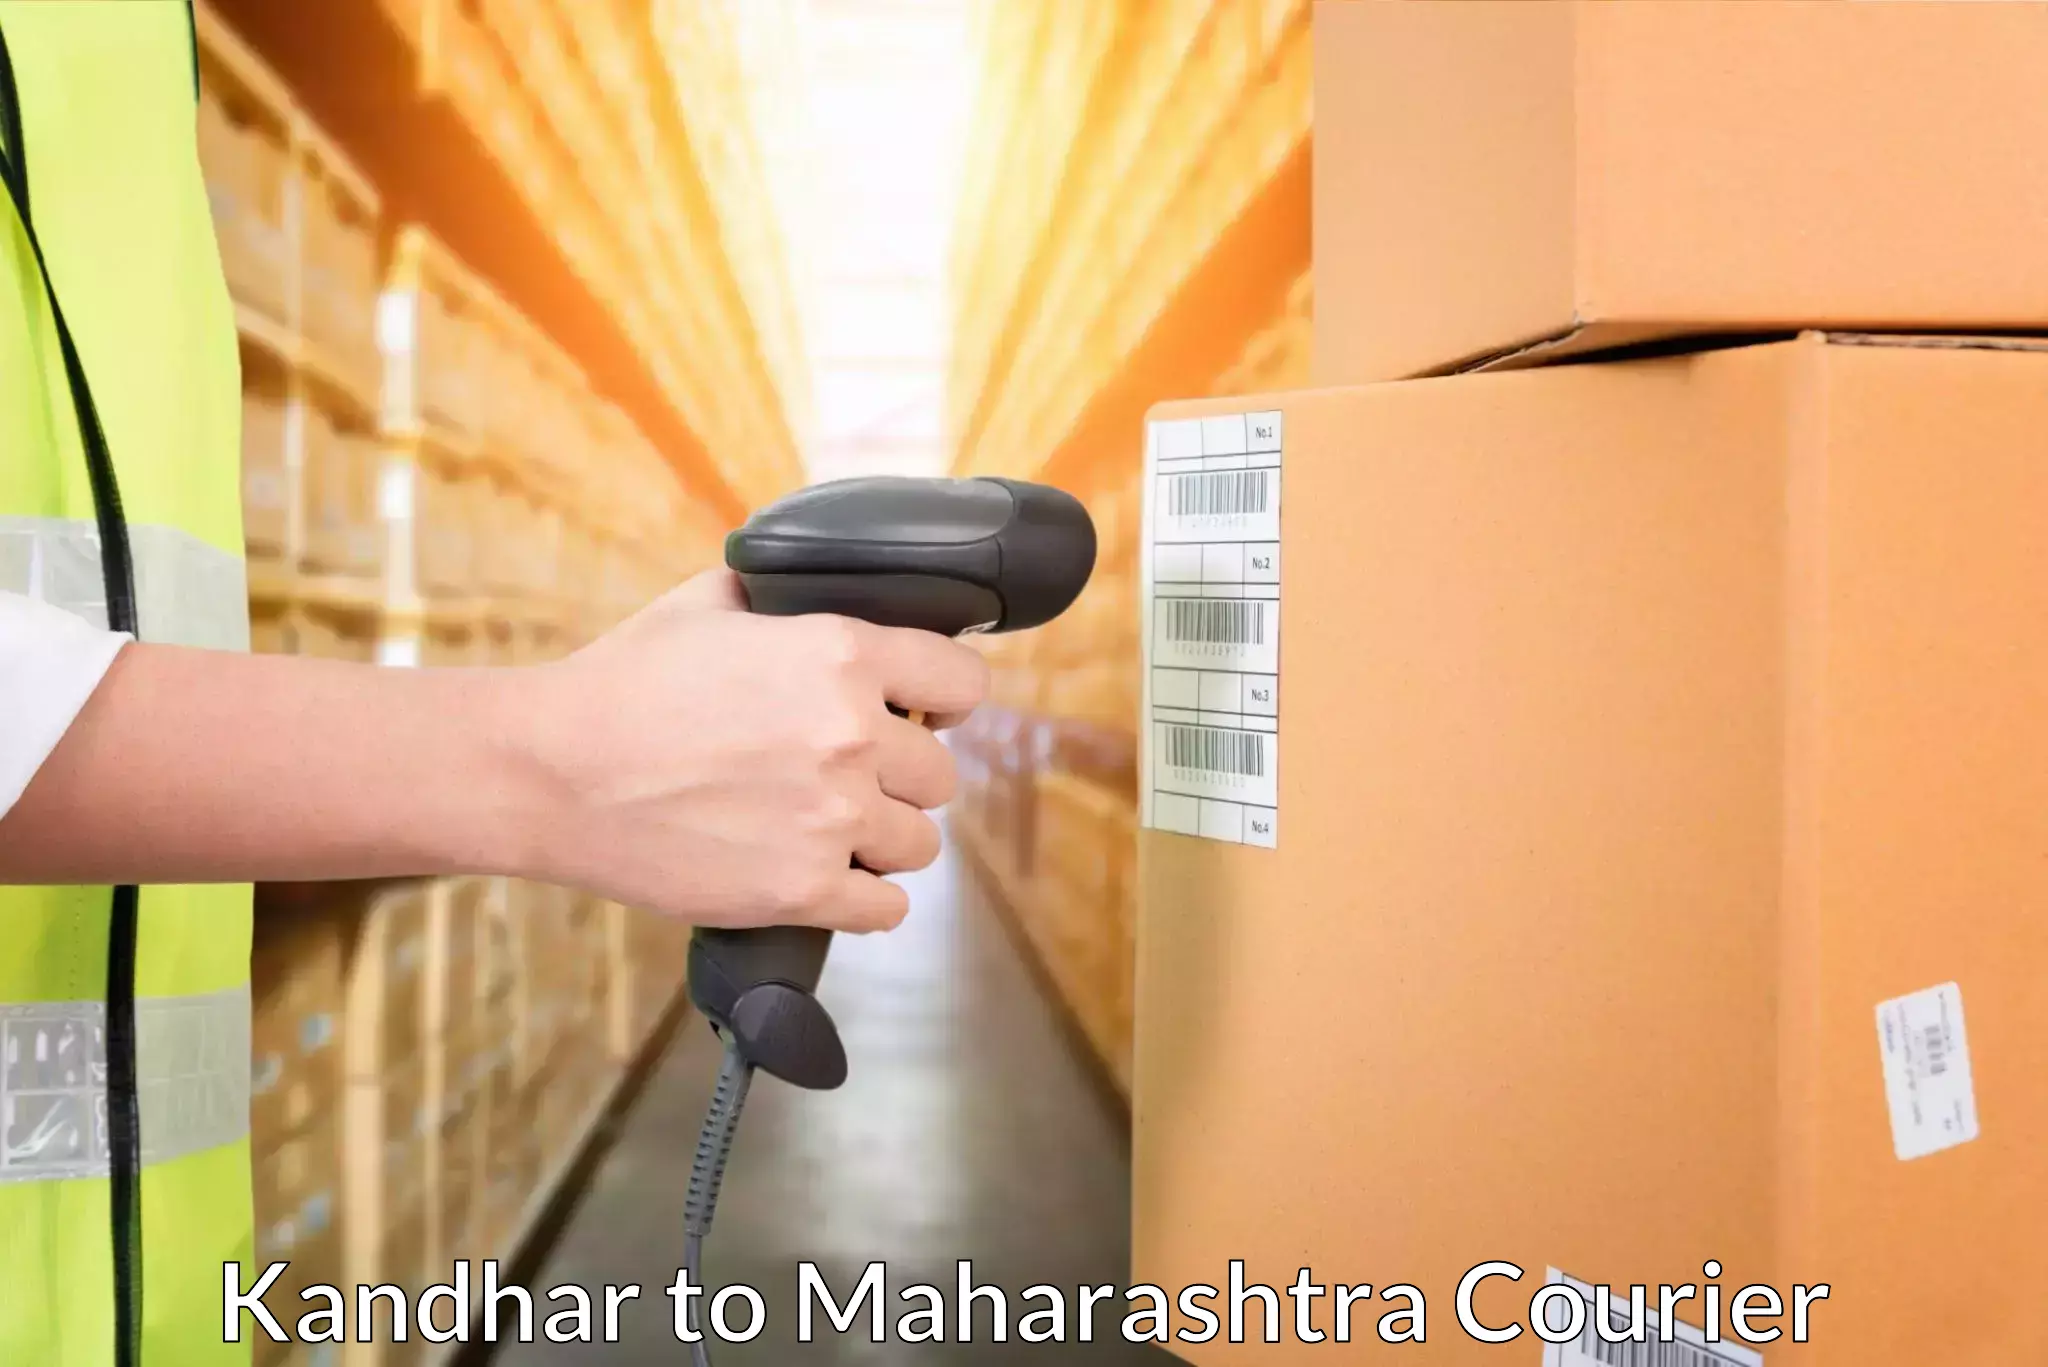 Bulk shipment Kandhar to Vasai